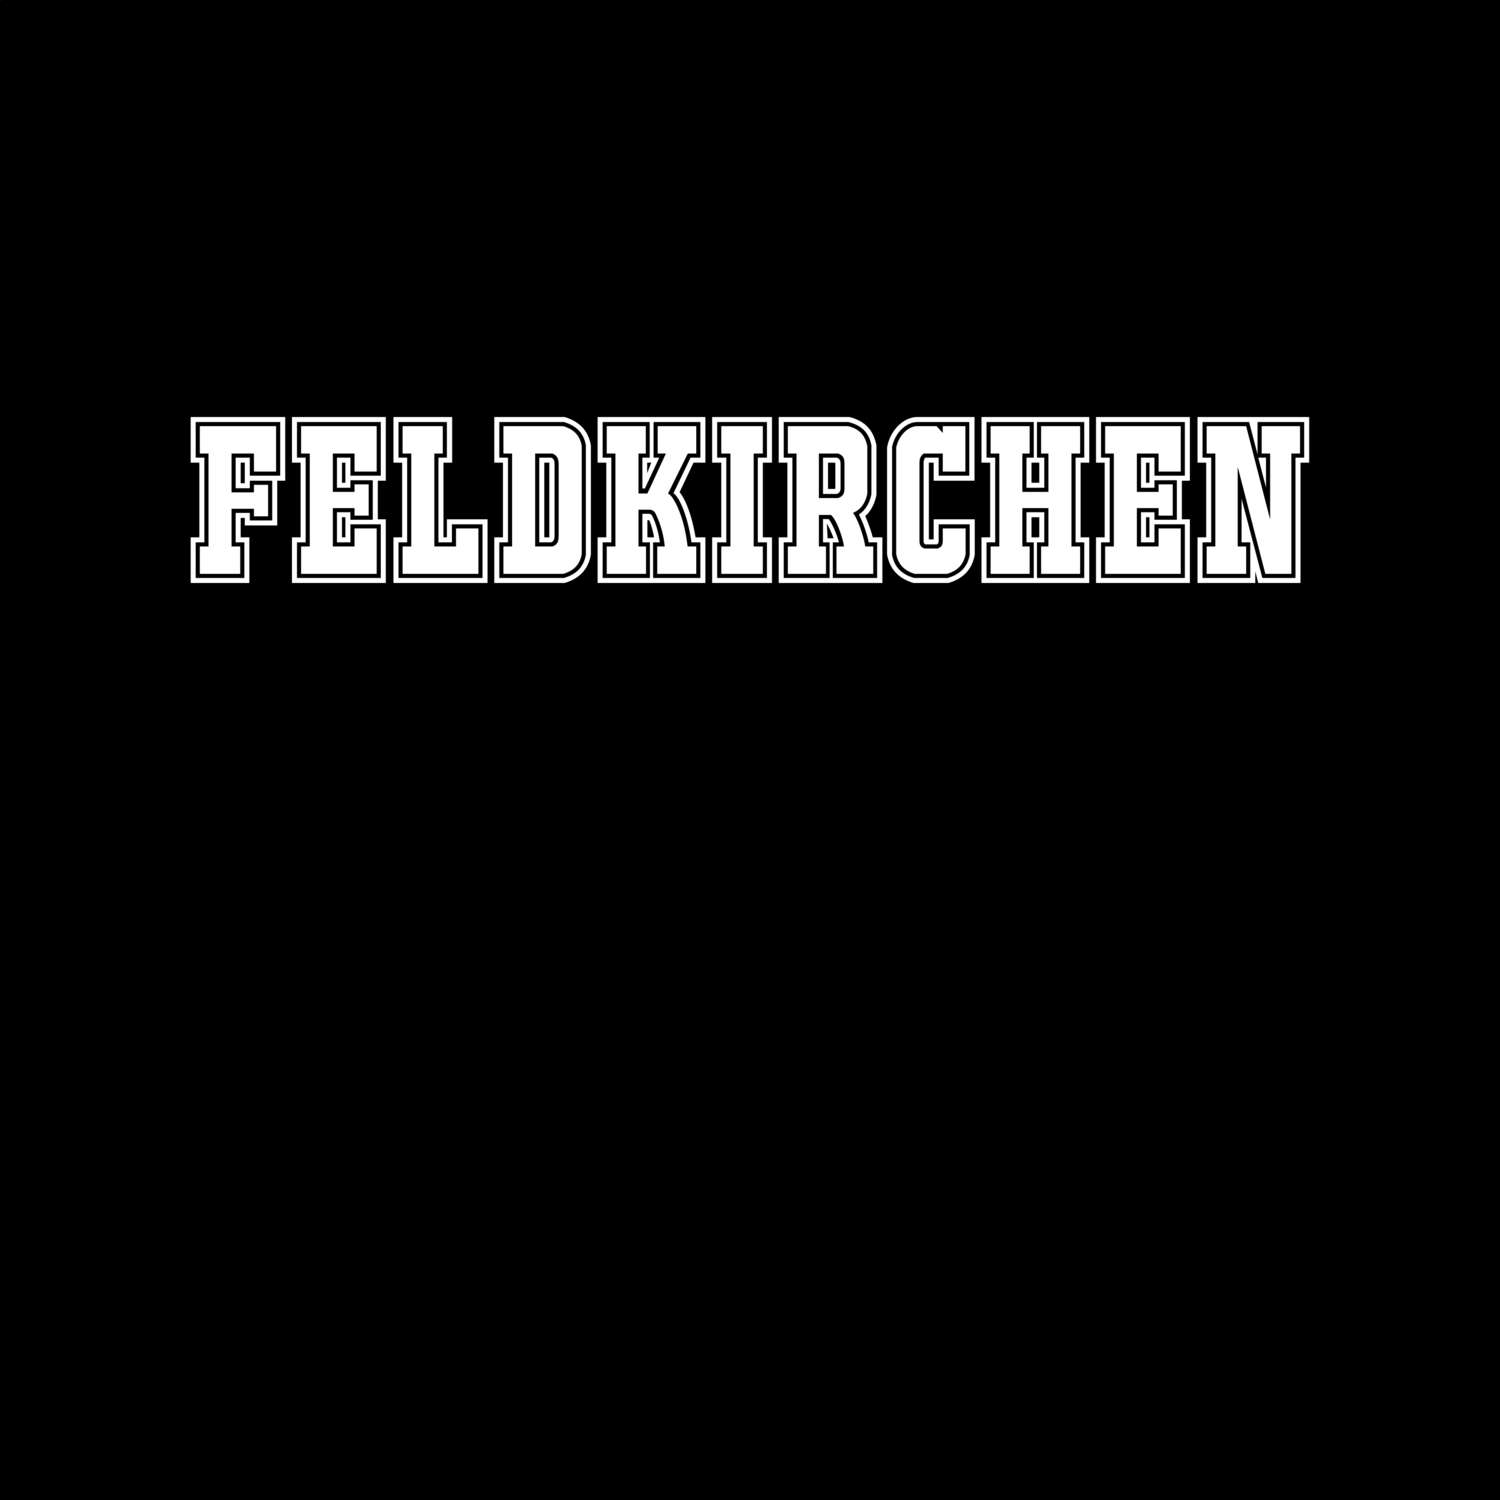 Feldkirchen T-Shirt »Classic«